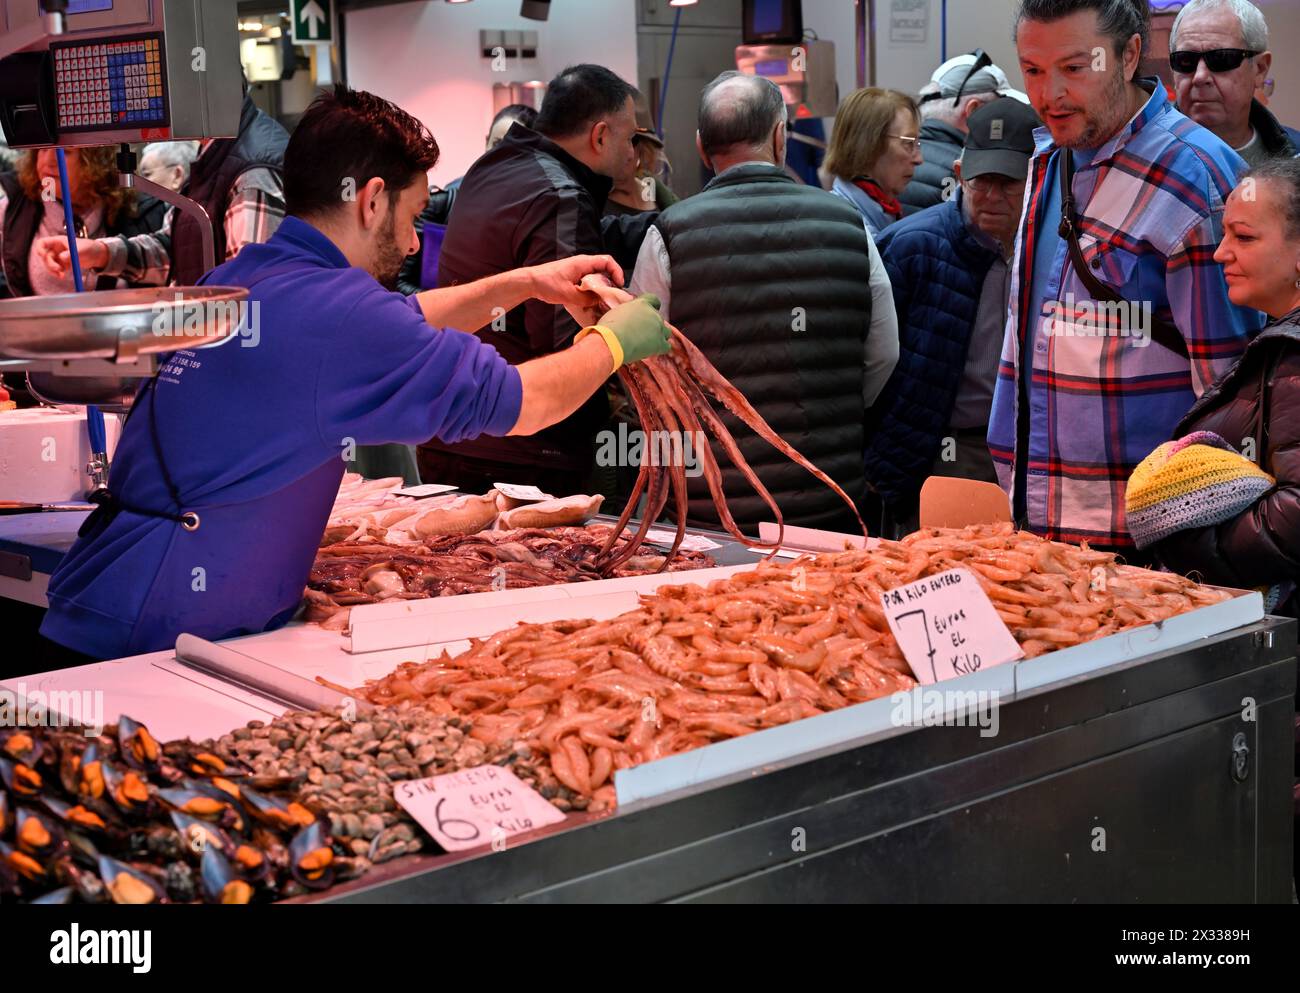 Frische Meeresfrüchte zum Verkauf am Marktstand, wobei der Verkäufer Kraken hält Stockfoto